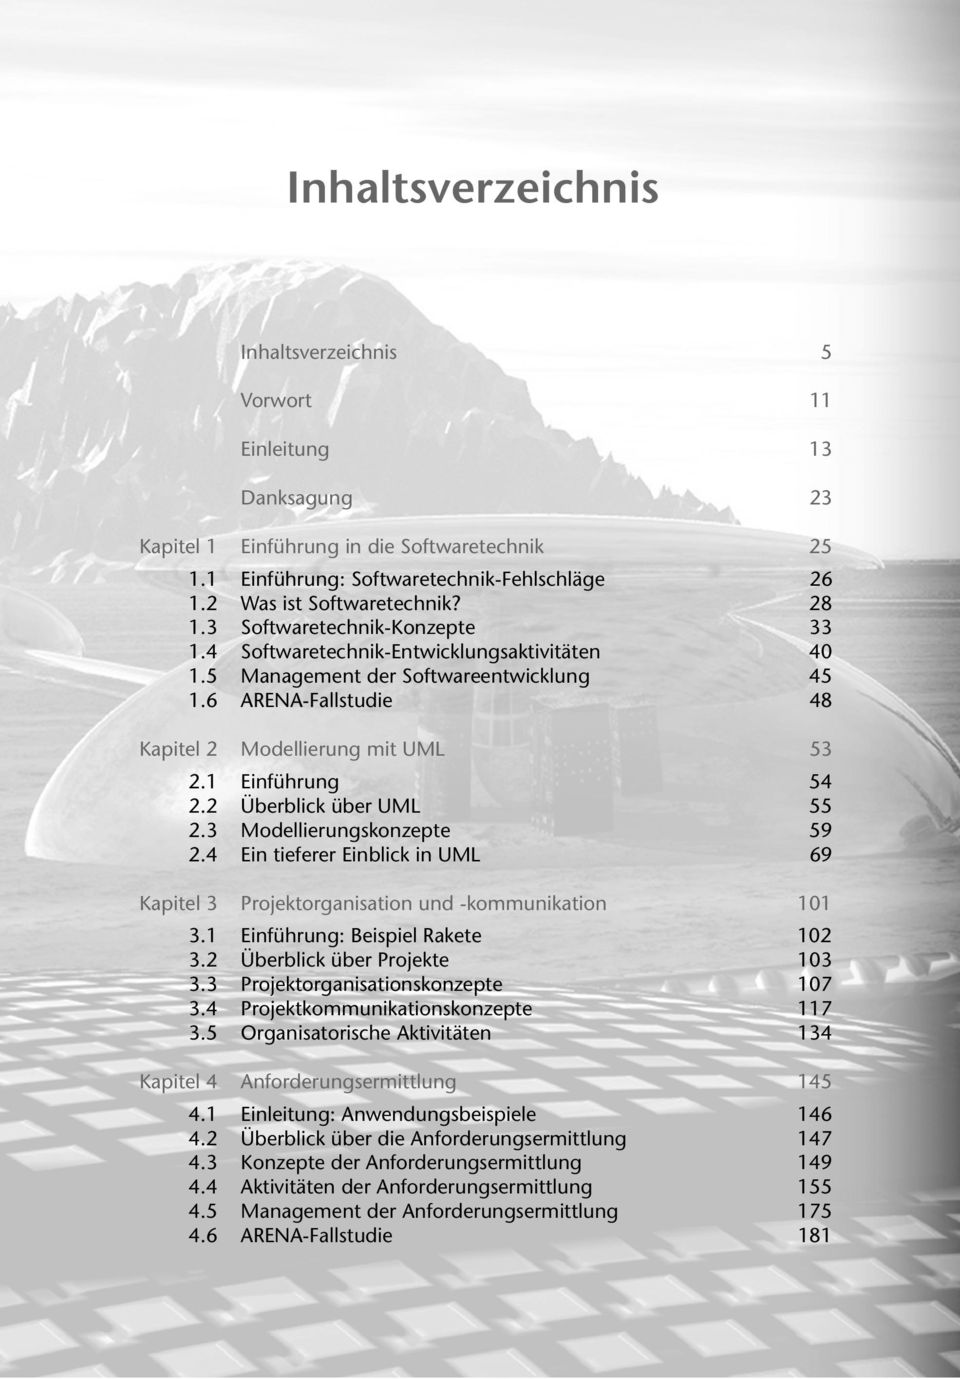 Softwaretechnik-Konzepte Softwaretechnik-Entwicklungsaktivitäten Management der Softwareentwicklung ARENA-Fallstudie 26 28 33 40 45 48 Modellierung mit UML 53 Einführung Überblick über UML